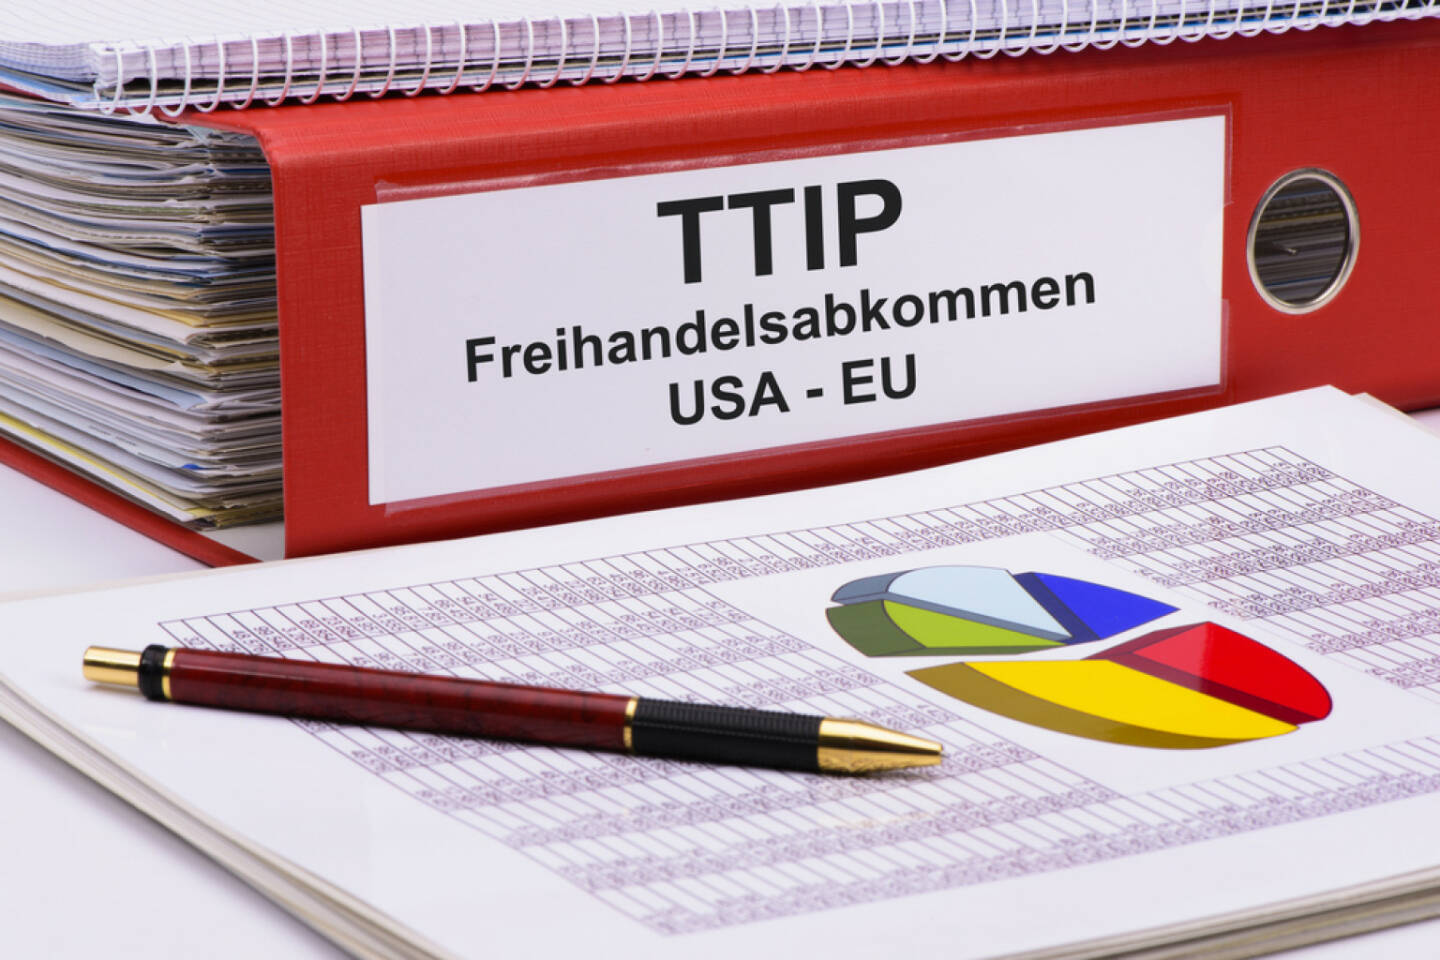 TTIP, http://www.shutterstock.com/de/pic-260194133/stock-photo-ttip-transatlantic-trade-and-investment-partnership.html
